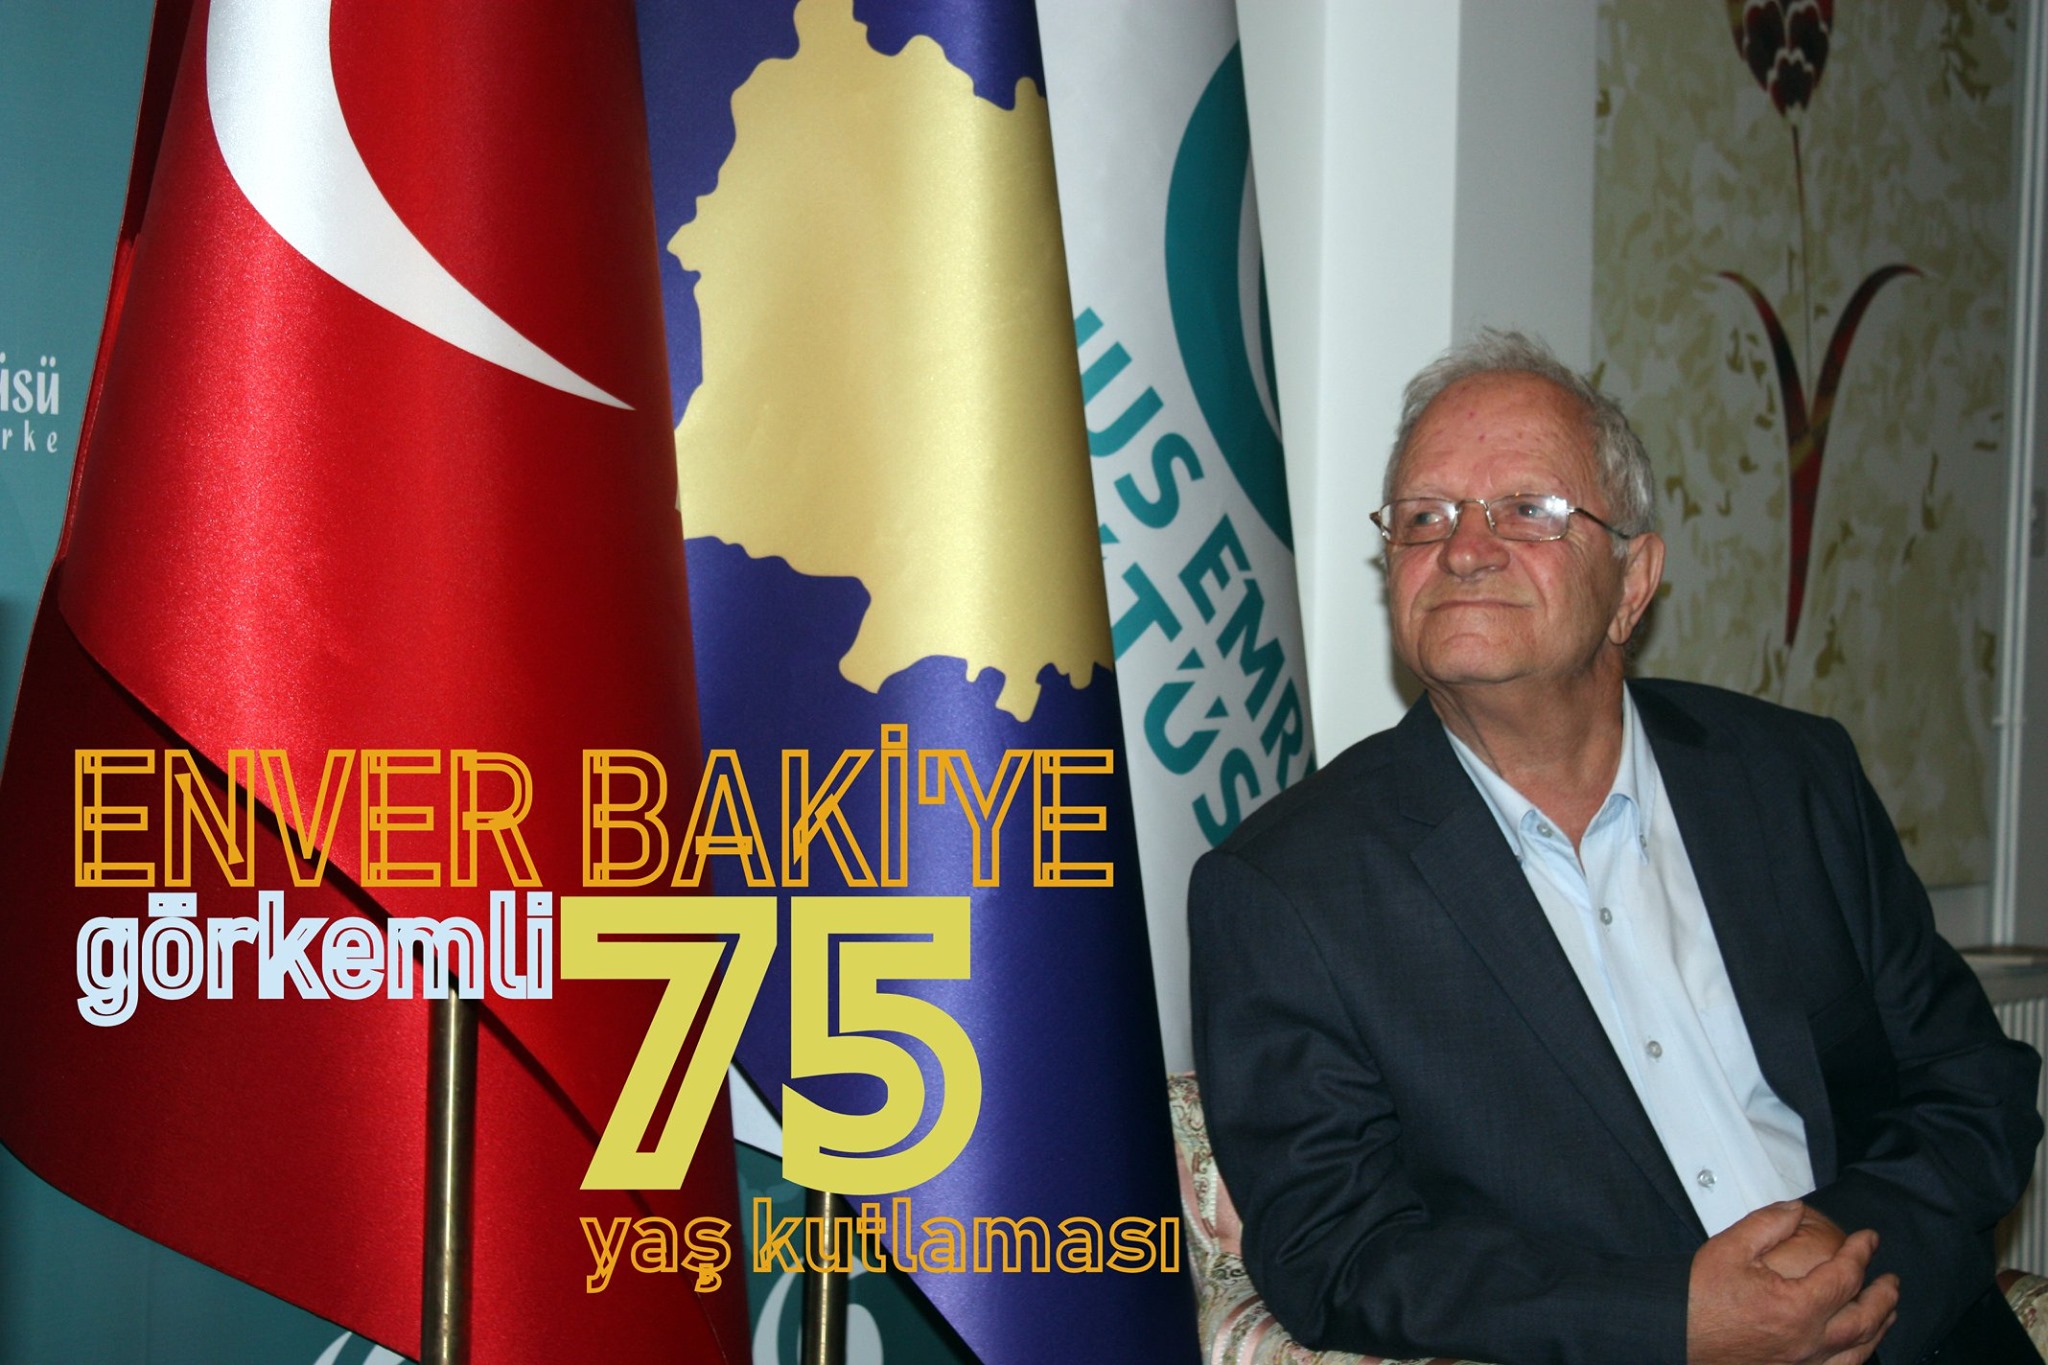 Enver Baki’ye görkemli 75. yaş kutlaması